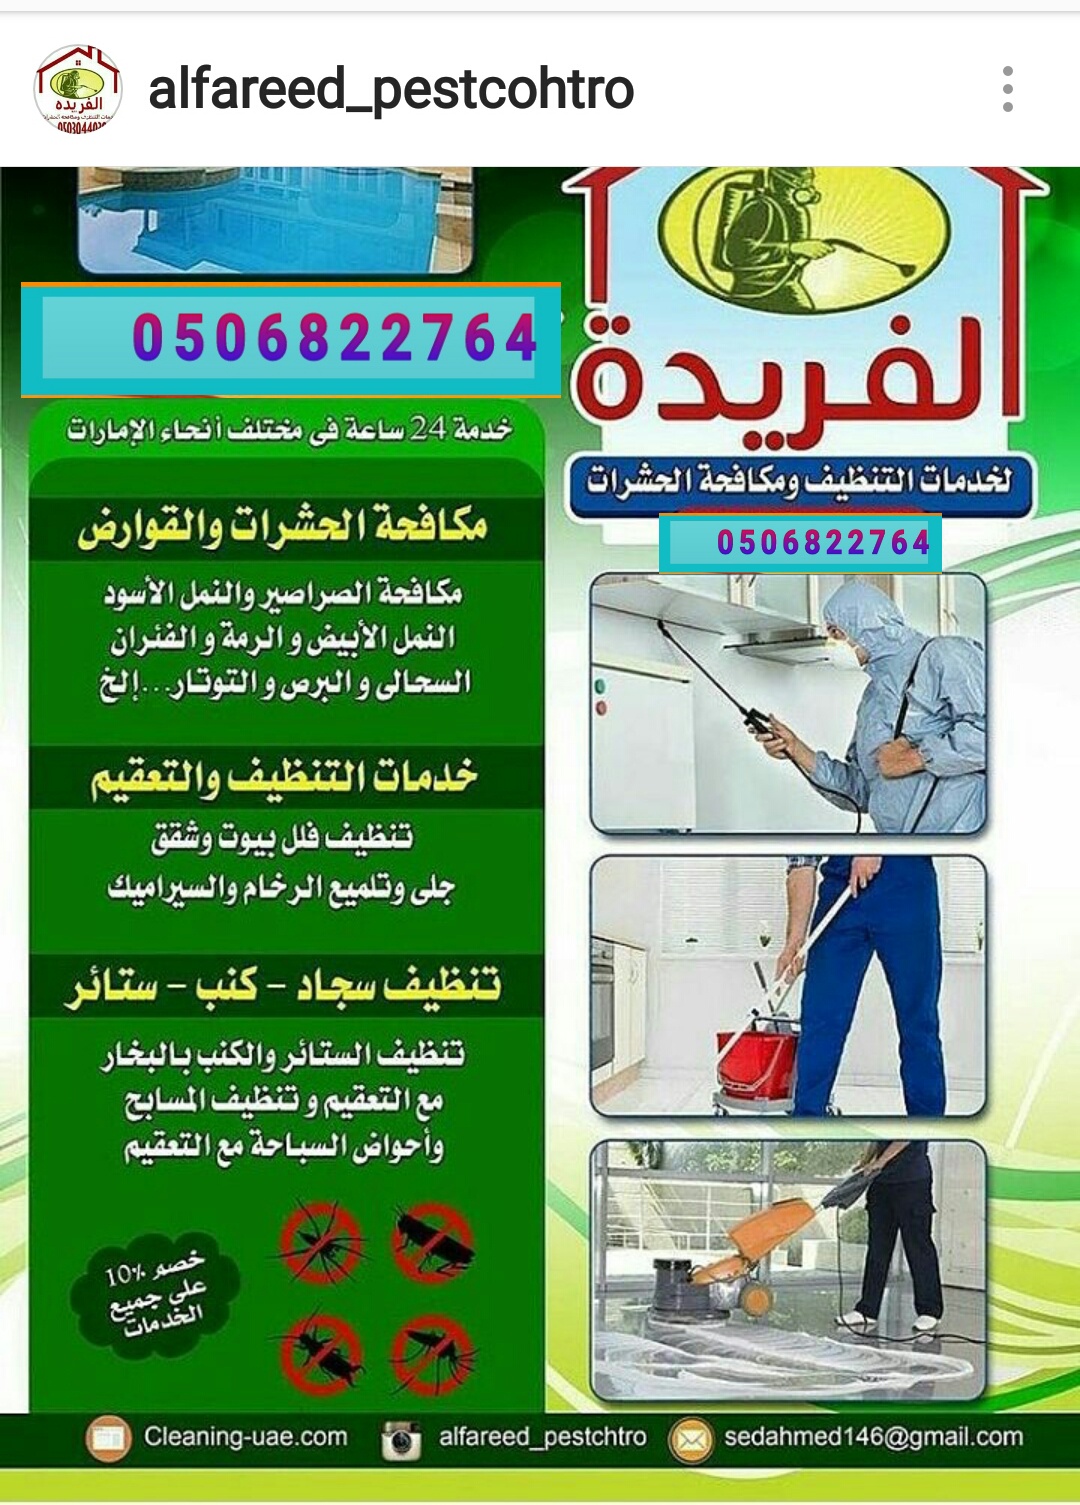 ✓شركة الفريدة 0506822764 تنظيف الفلل والمنازل في الشارقه/ابو ظبي/دبي P_783msw6w1